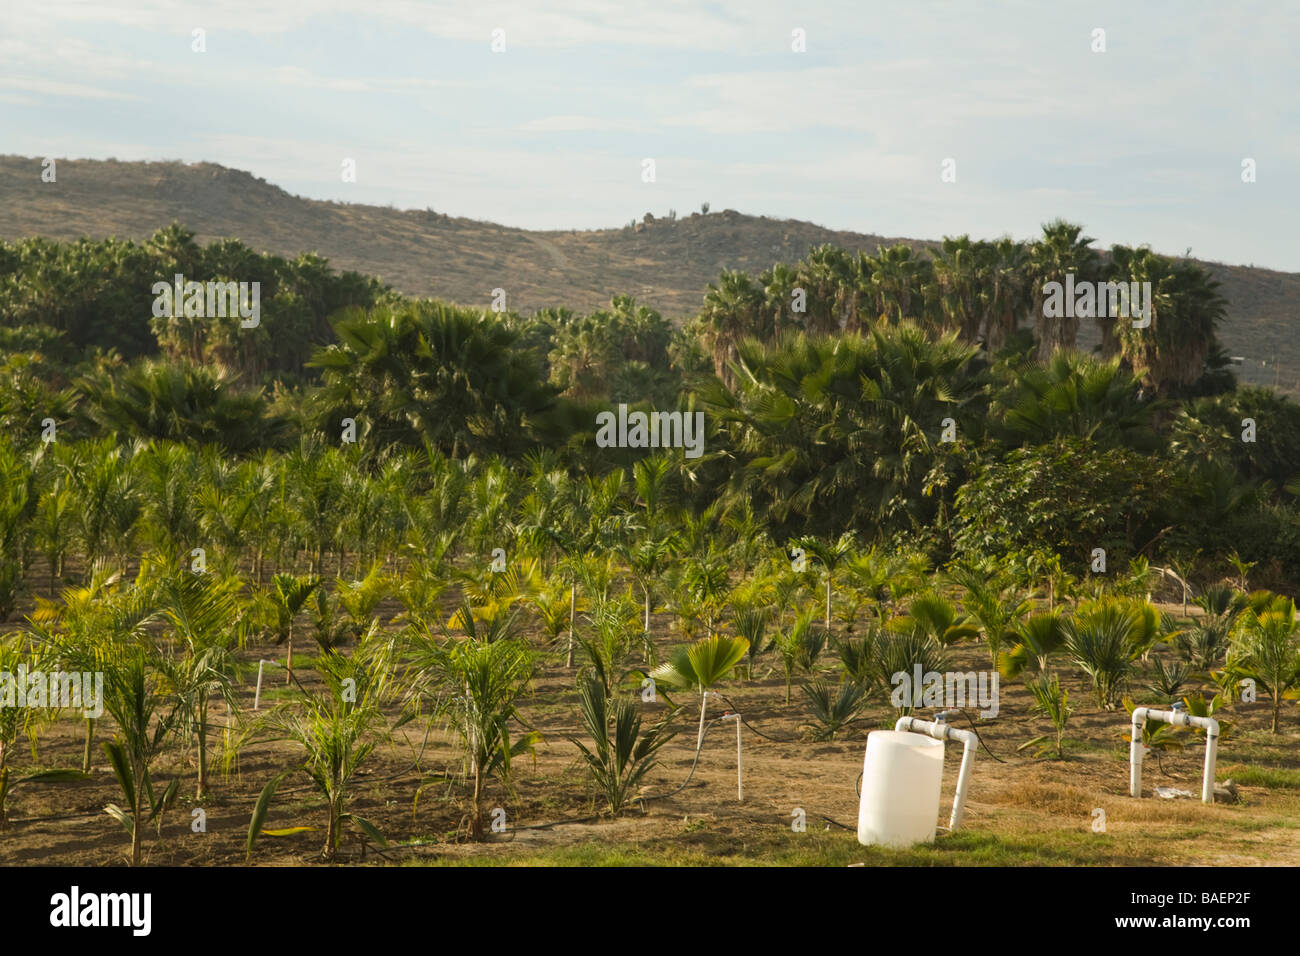 Messico Todos Santos righe delle superfici irrigate palme in crescita in vivaio campo Sierra Laguna montagne in distanza Foto Stock